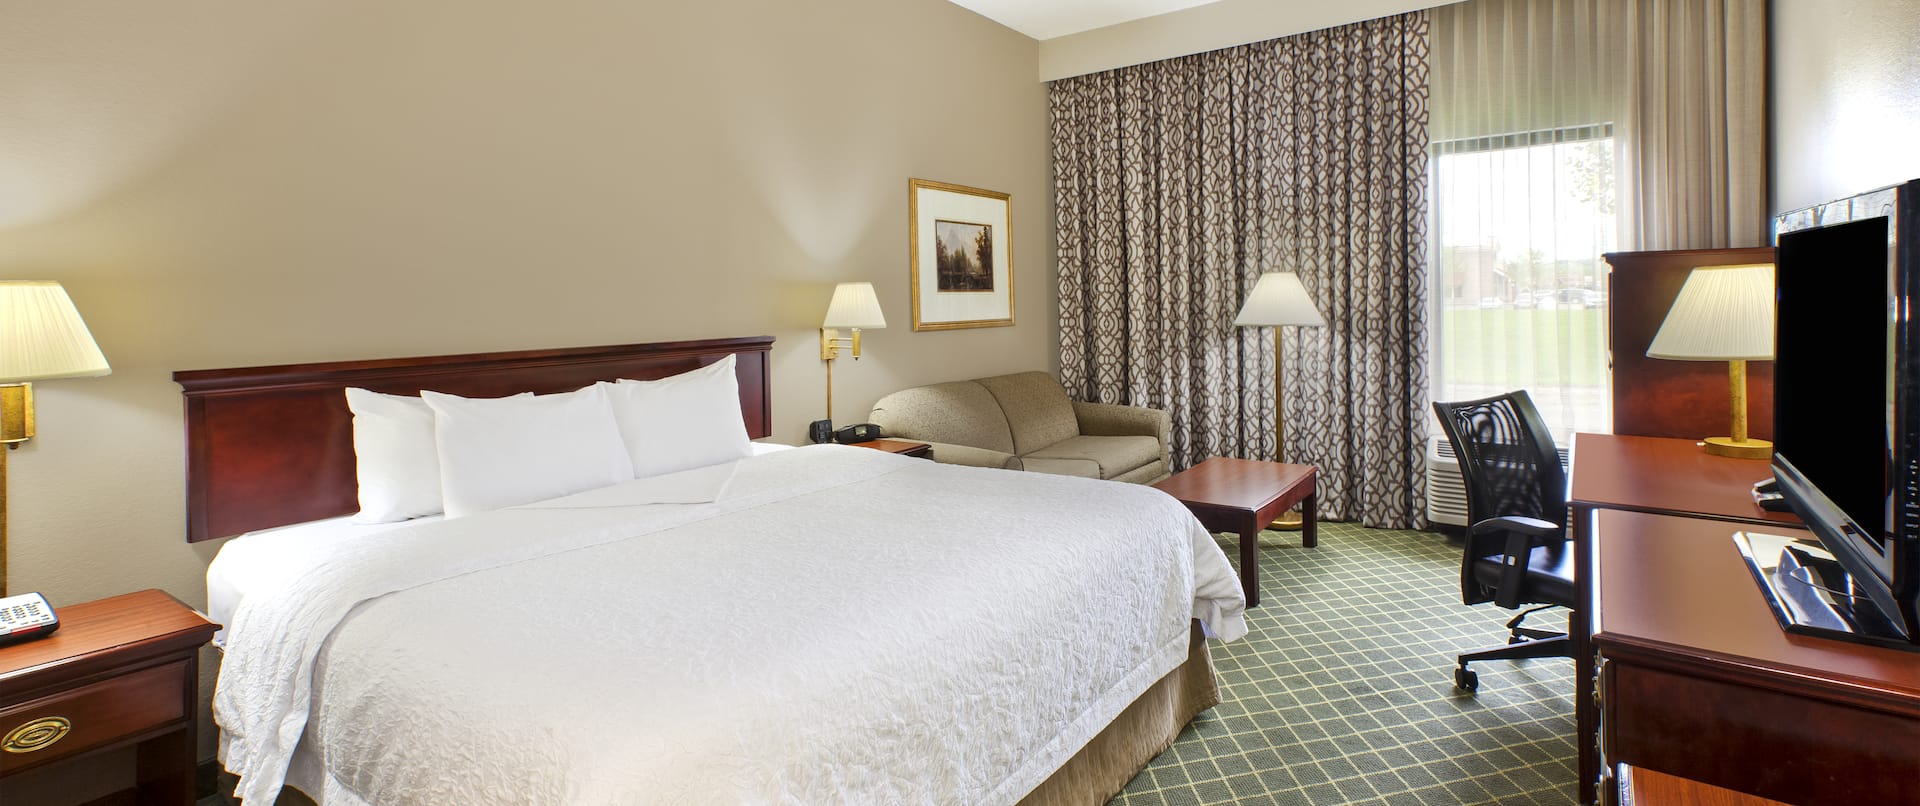 Hampton Inn Marietta Hotel, OH - King Study Guest Room